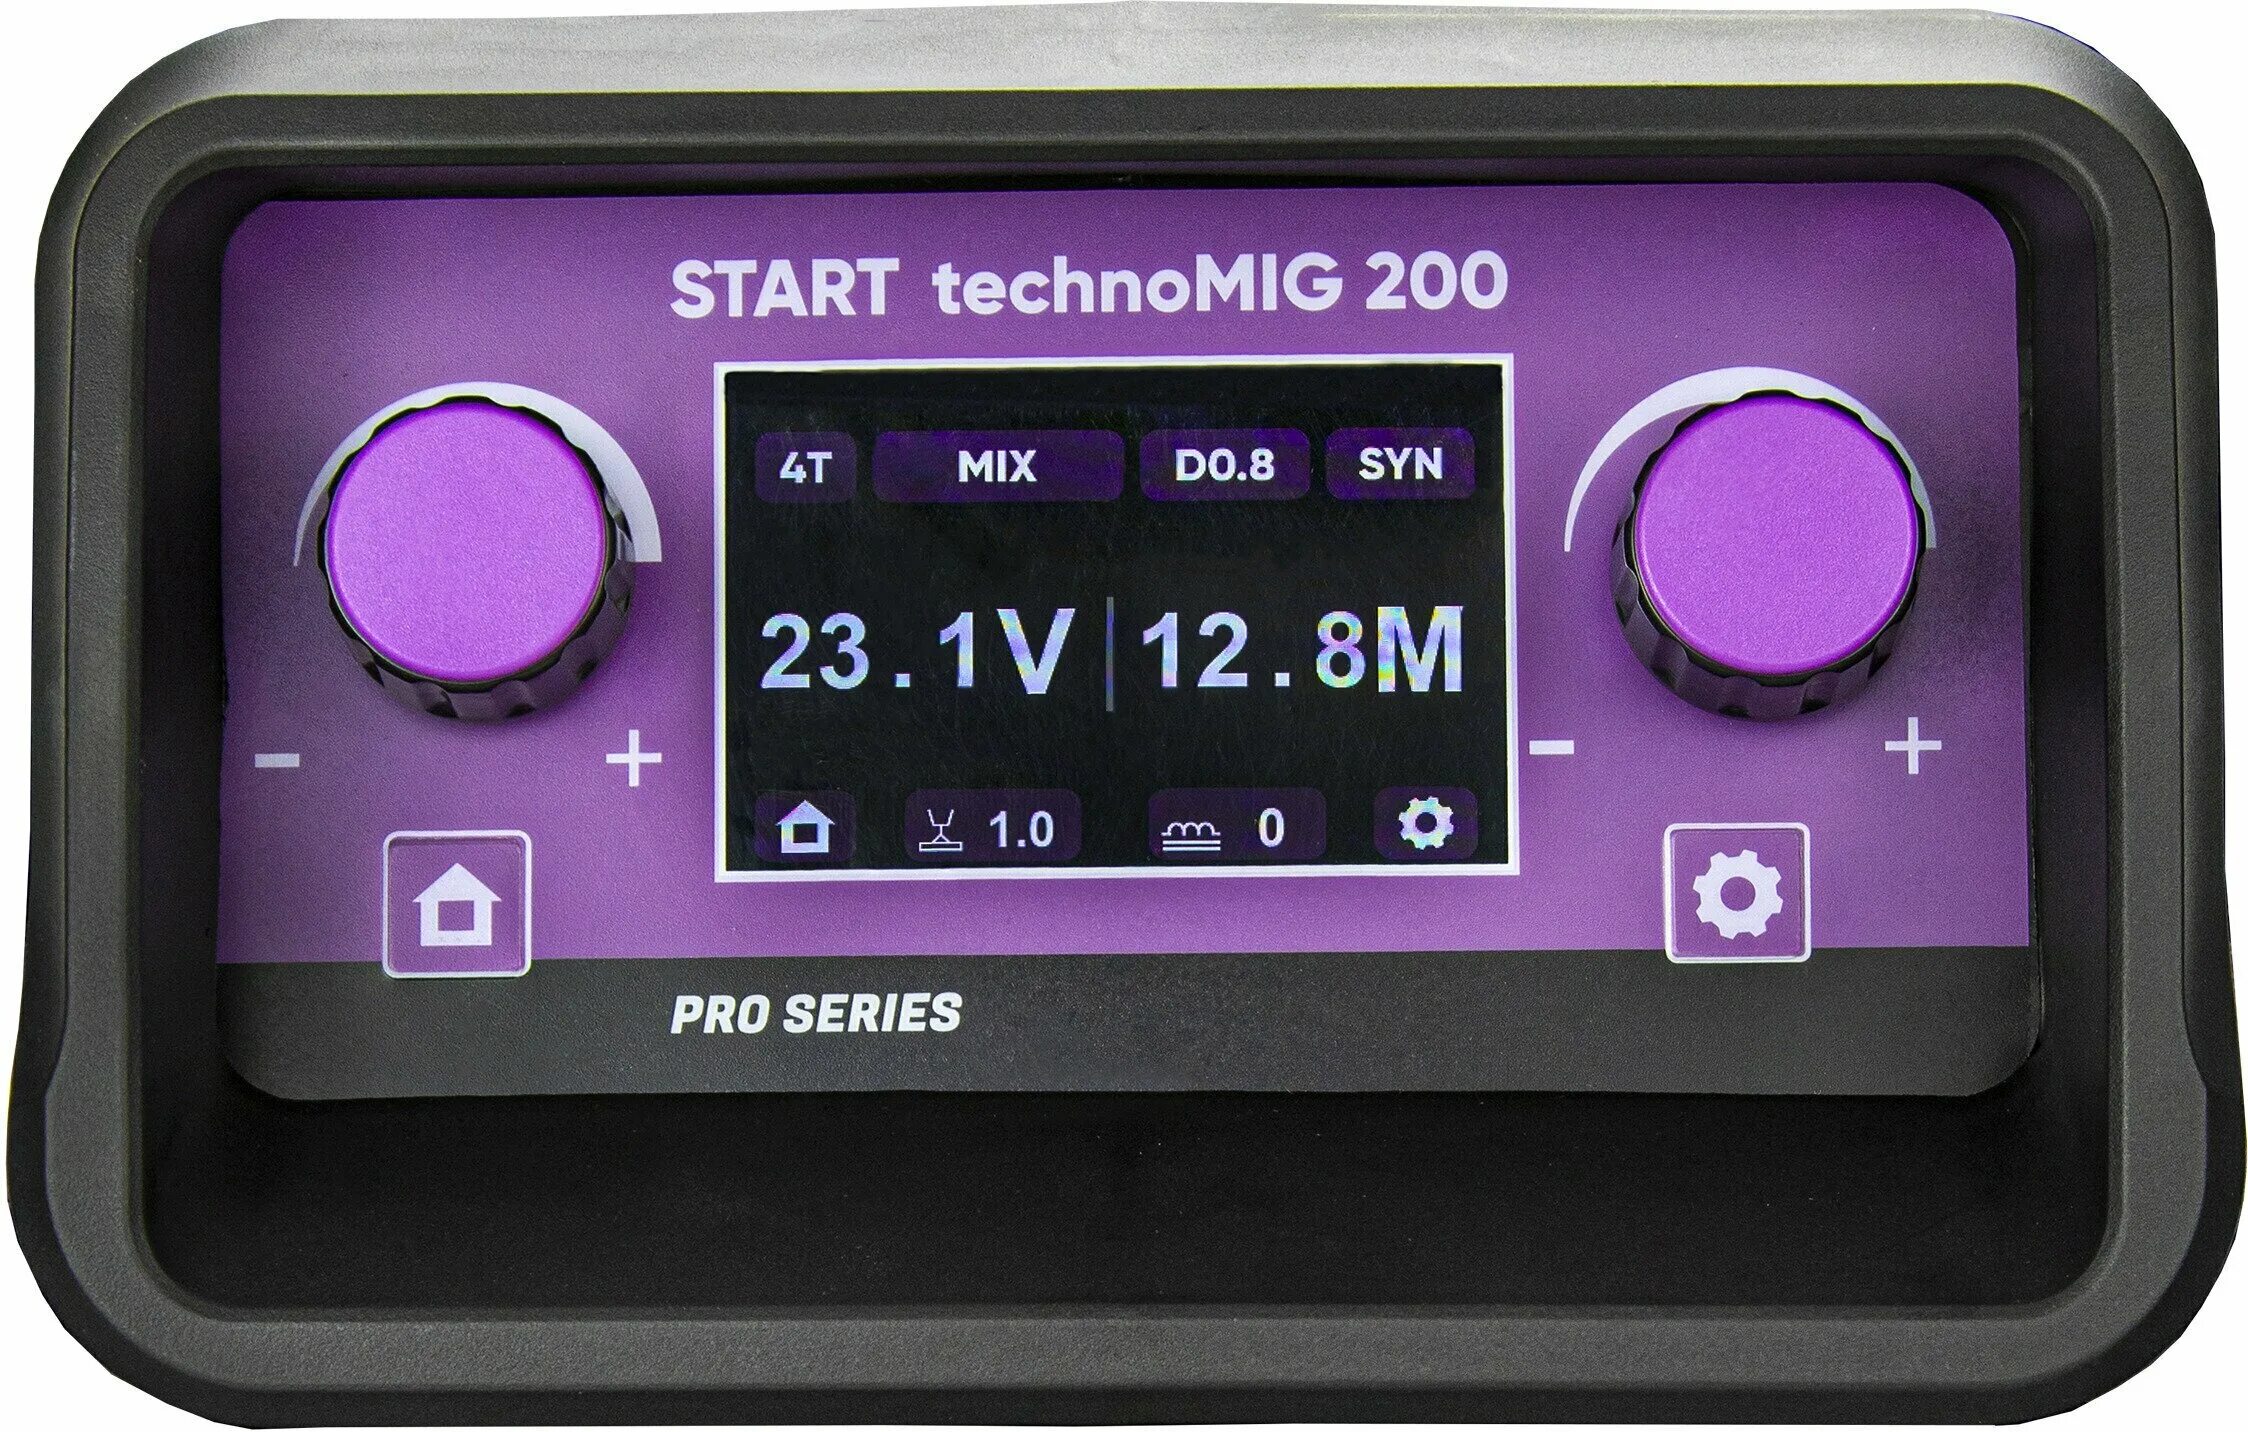 Wega start pro. Start Pro Wega 200. Start Wega 200 TECHNOMIG. Сварочный полуавтомат start Pro Wega 200 TECHNOMIG 2w200t. Wega 200 TECHNOMIG start Pro запчасти.